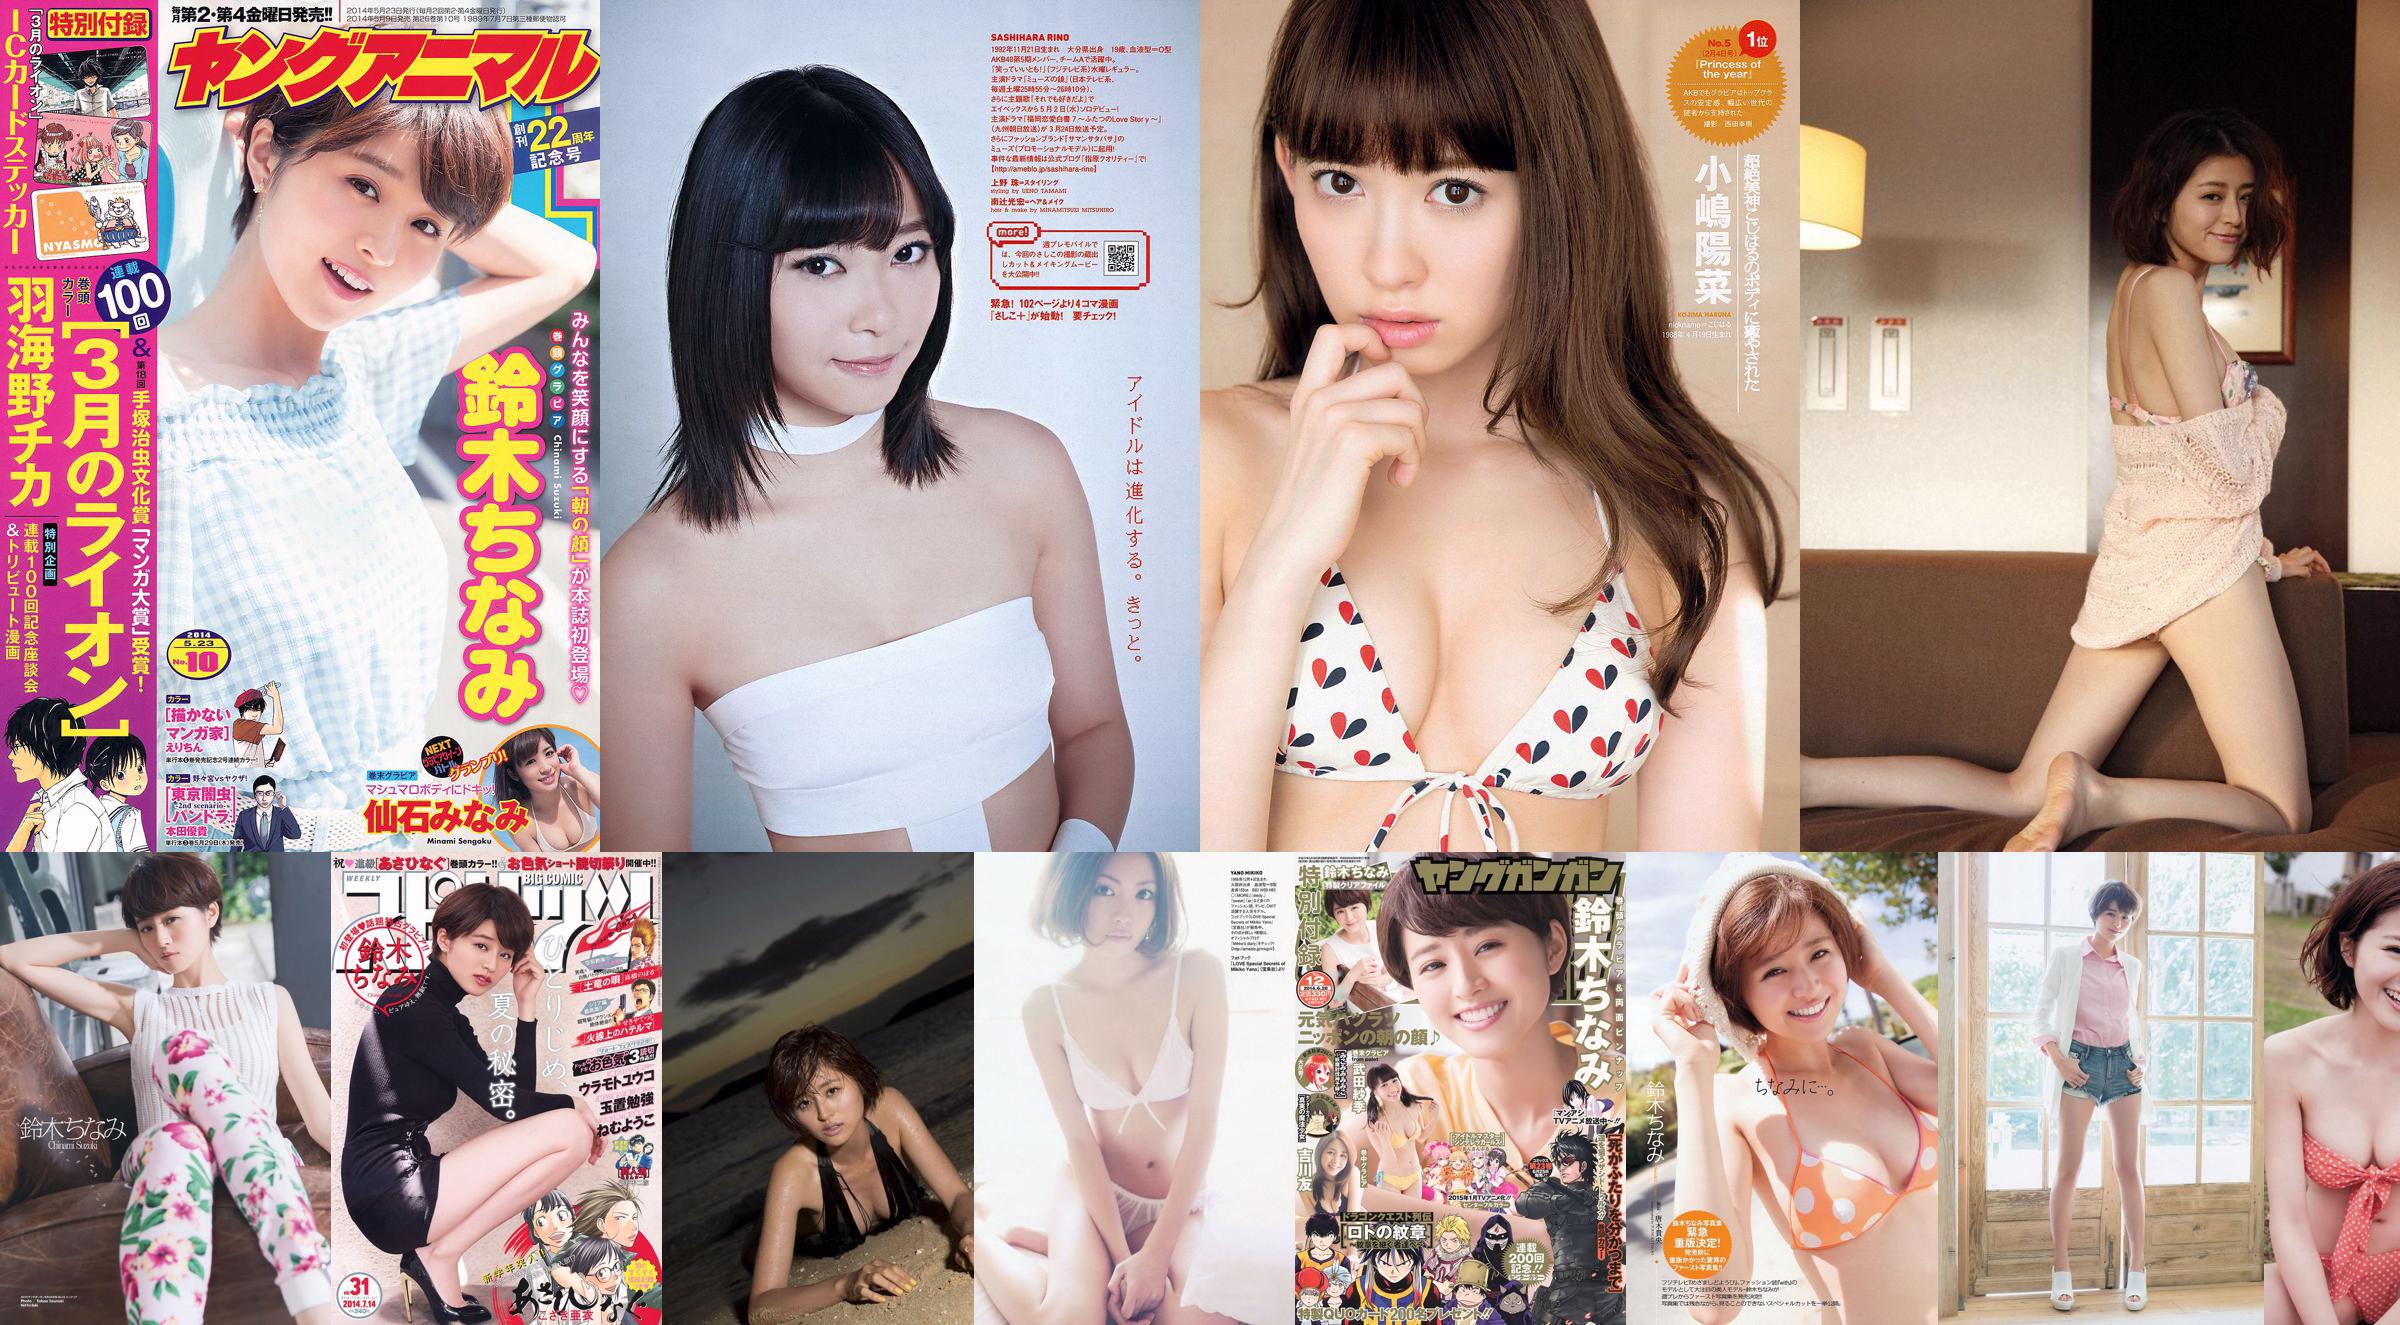 Chinami Suzuki Erena Ono Fujiko Kojima Rina Koike Yuu Tejima Mitsu Dan [Wöchentlicher Playboy] 2012 Nr. 50 Foto No.20c33c Seite 3